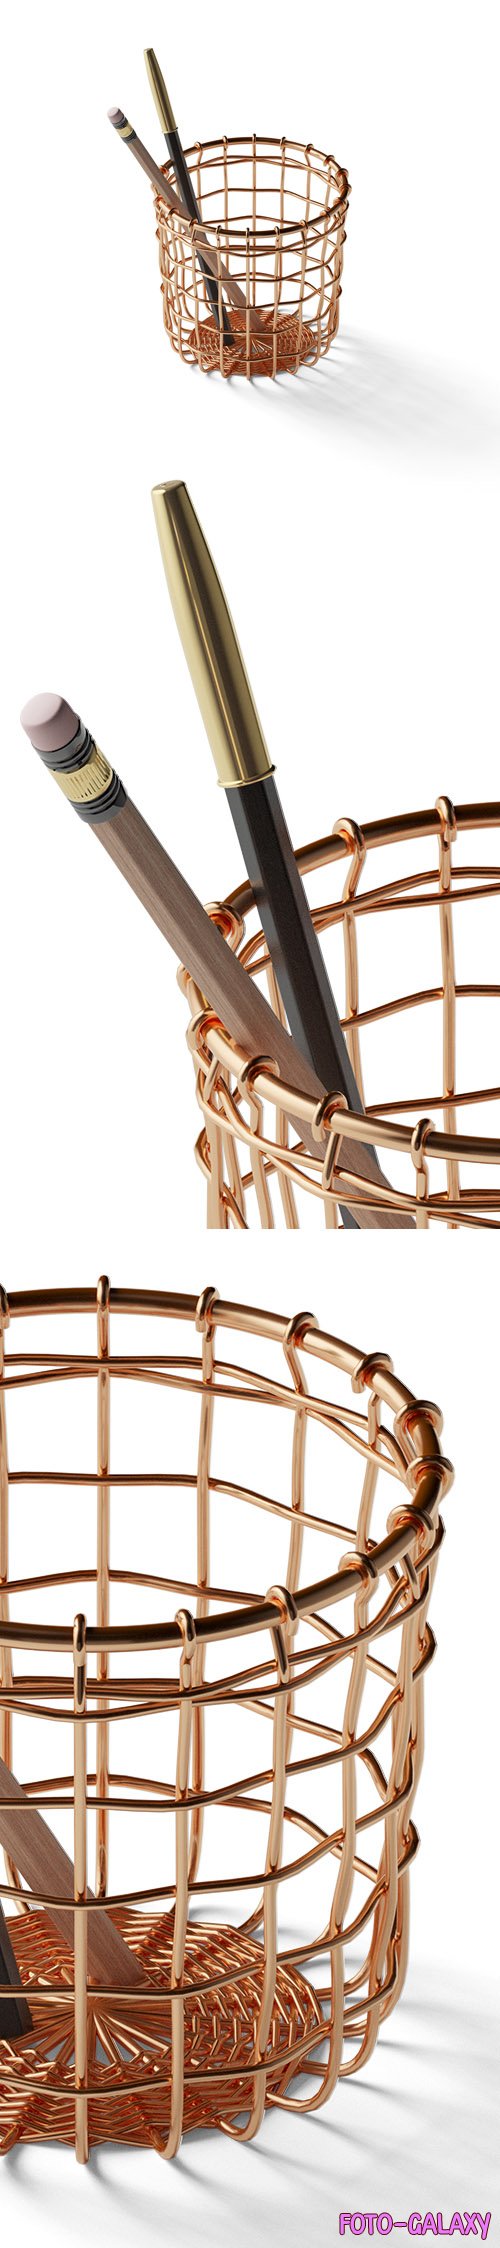 Shiny Copper Basket PSD Mockup Template